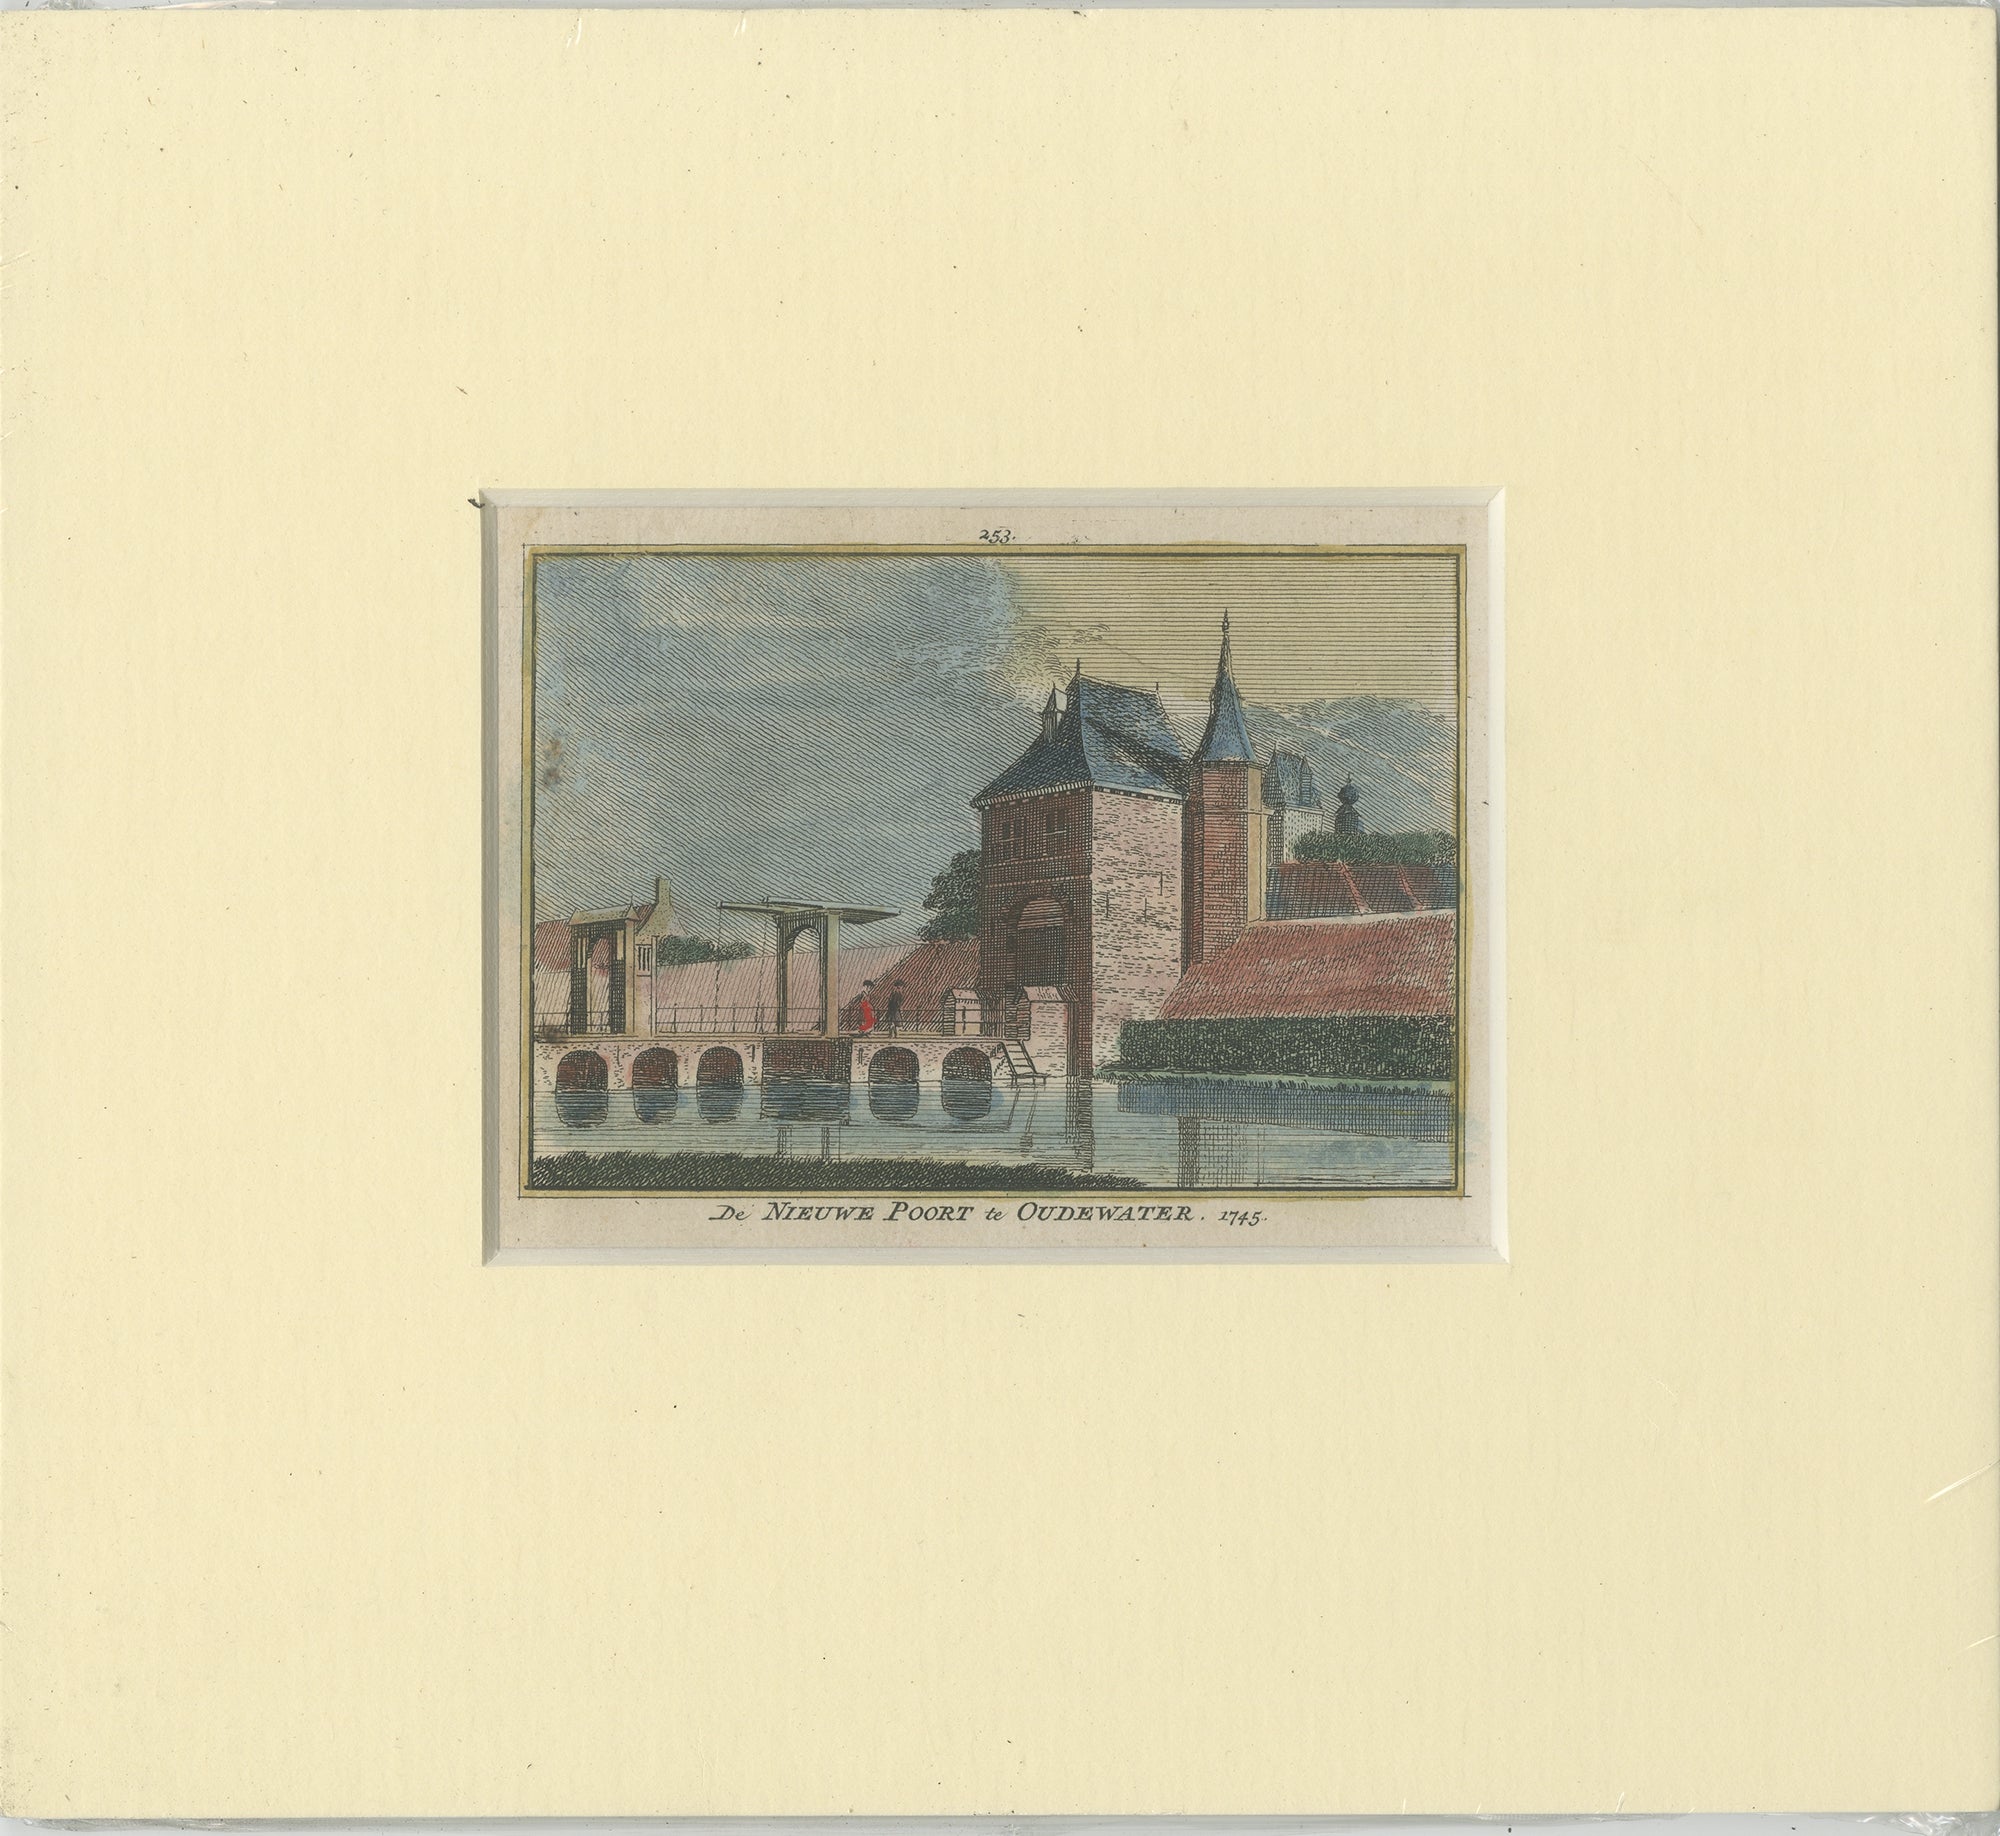 Impression ancienne de la ville d'Audenwater aux Pays-Bas, vers 1750